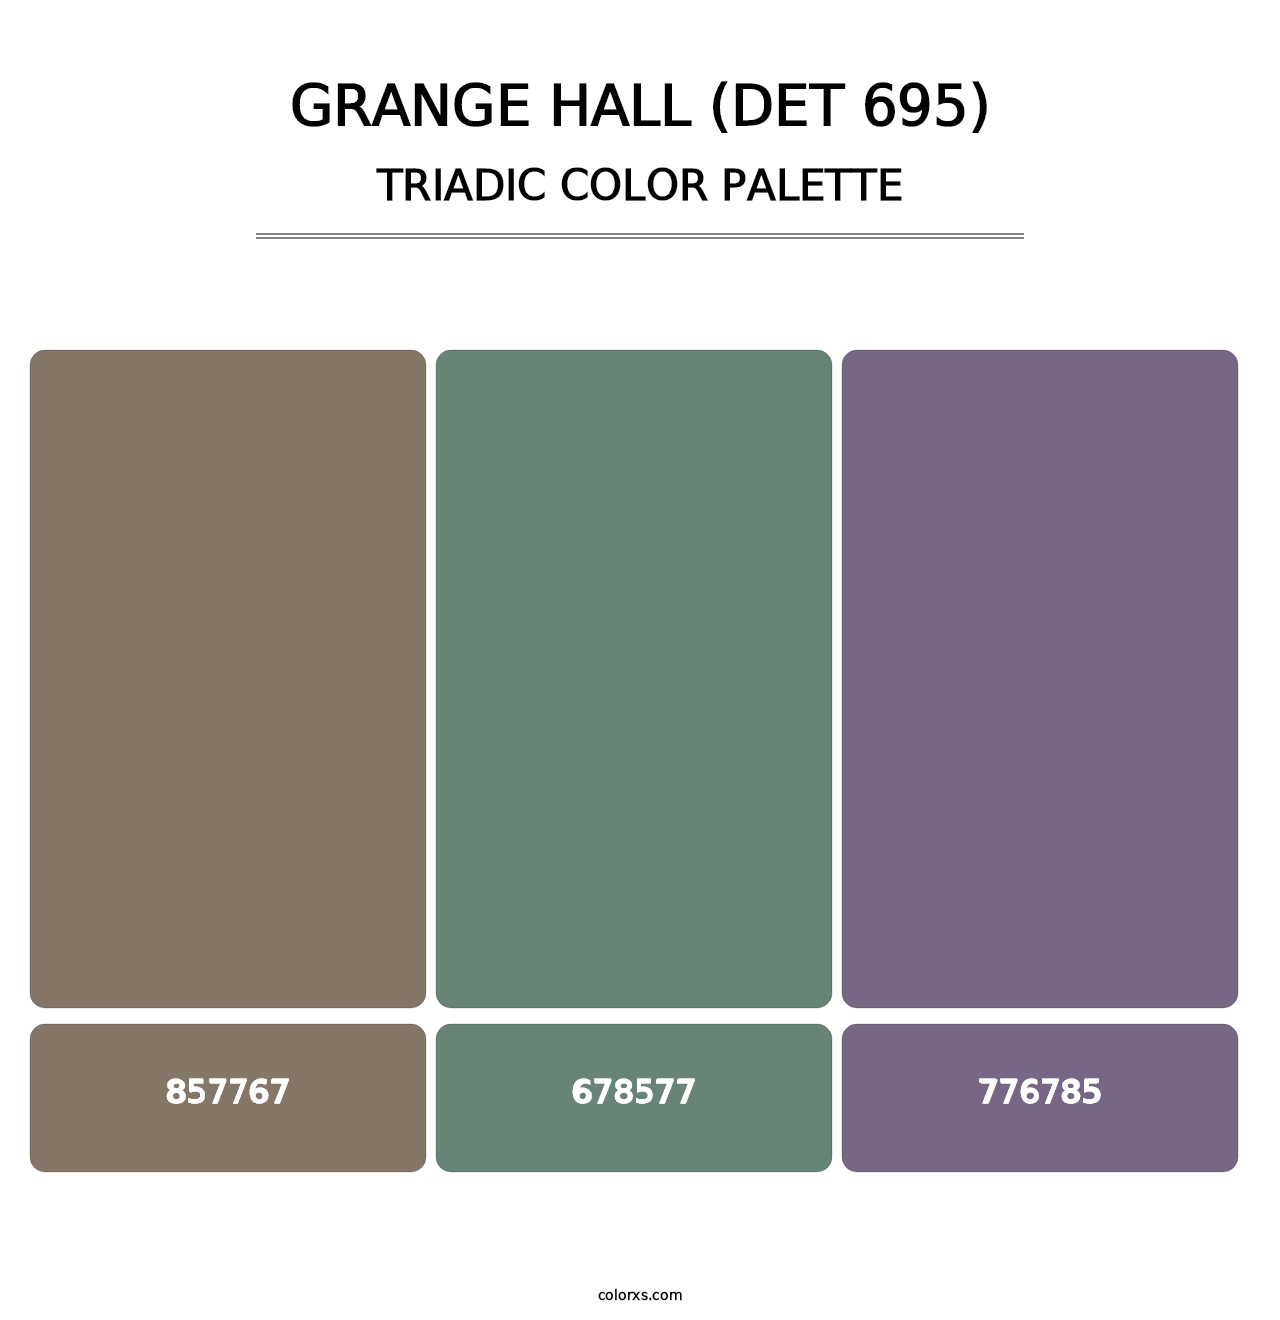 Grange Hall (DET 695) - Triadic Color Palette